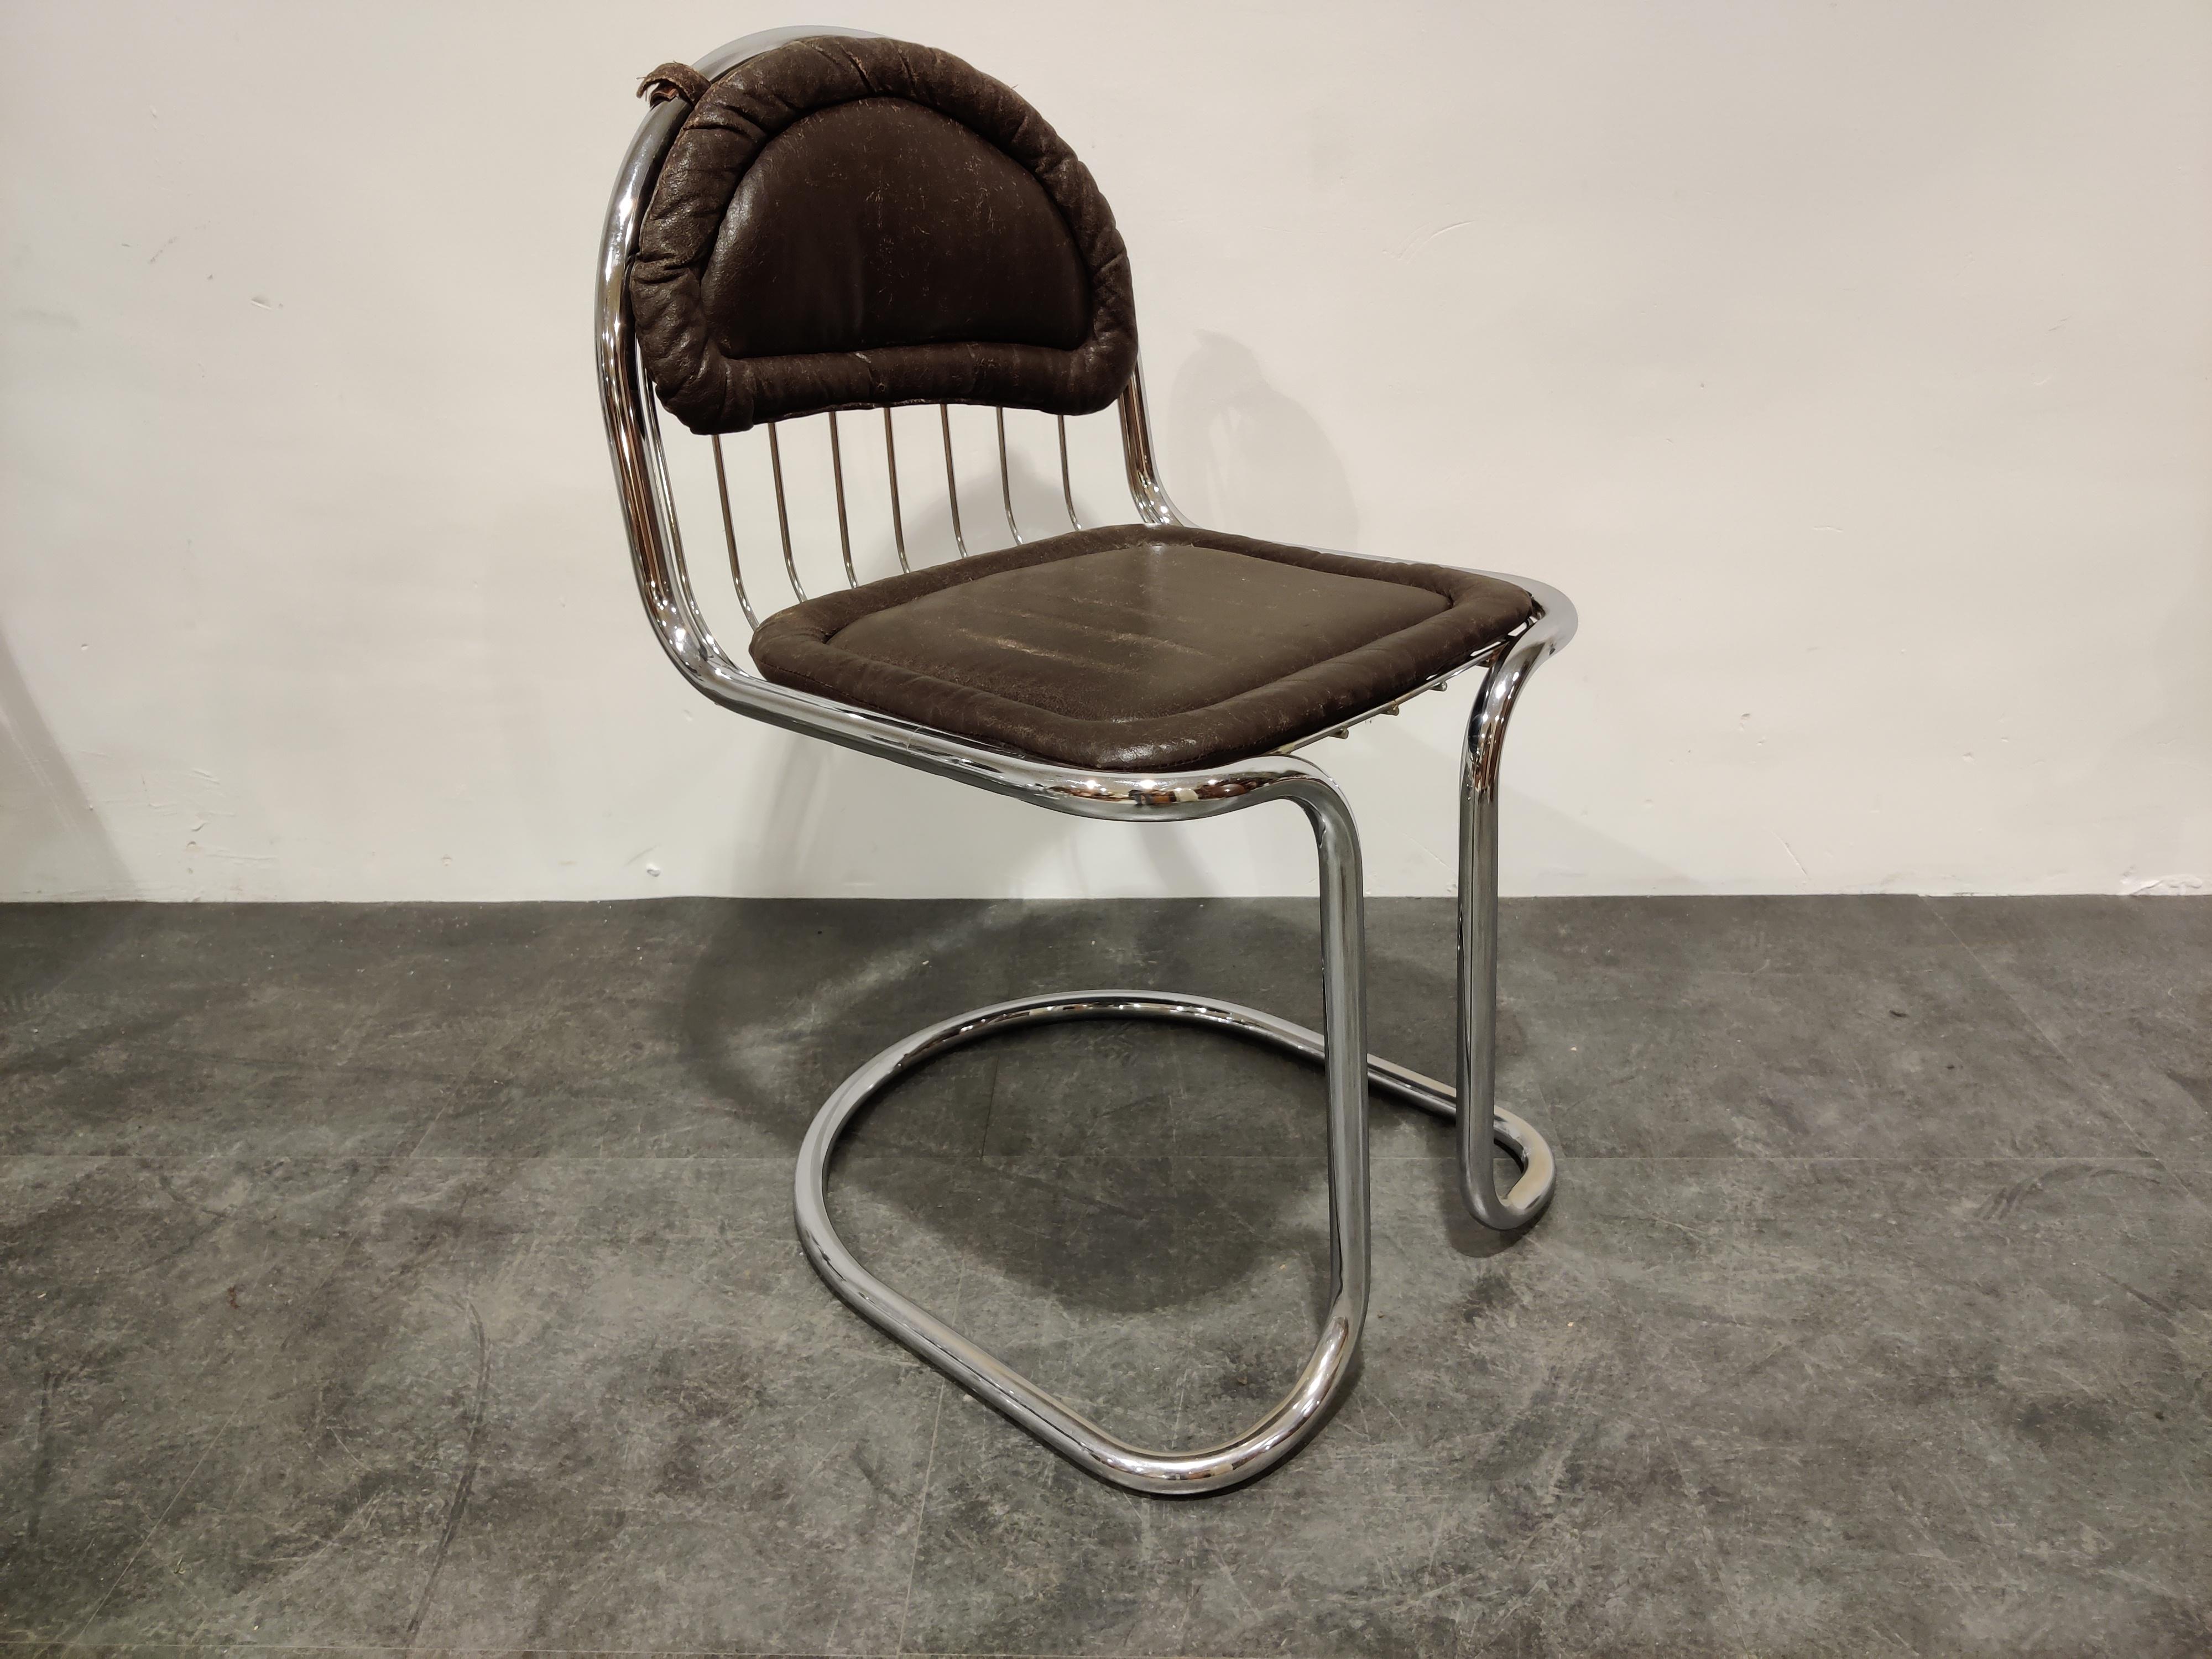 retro chrome kitchen chairs